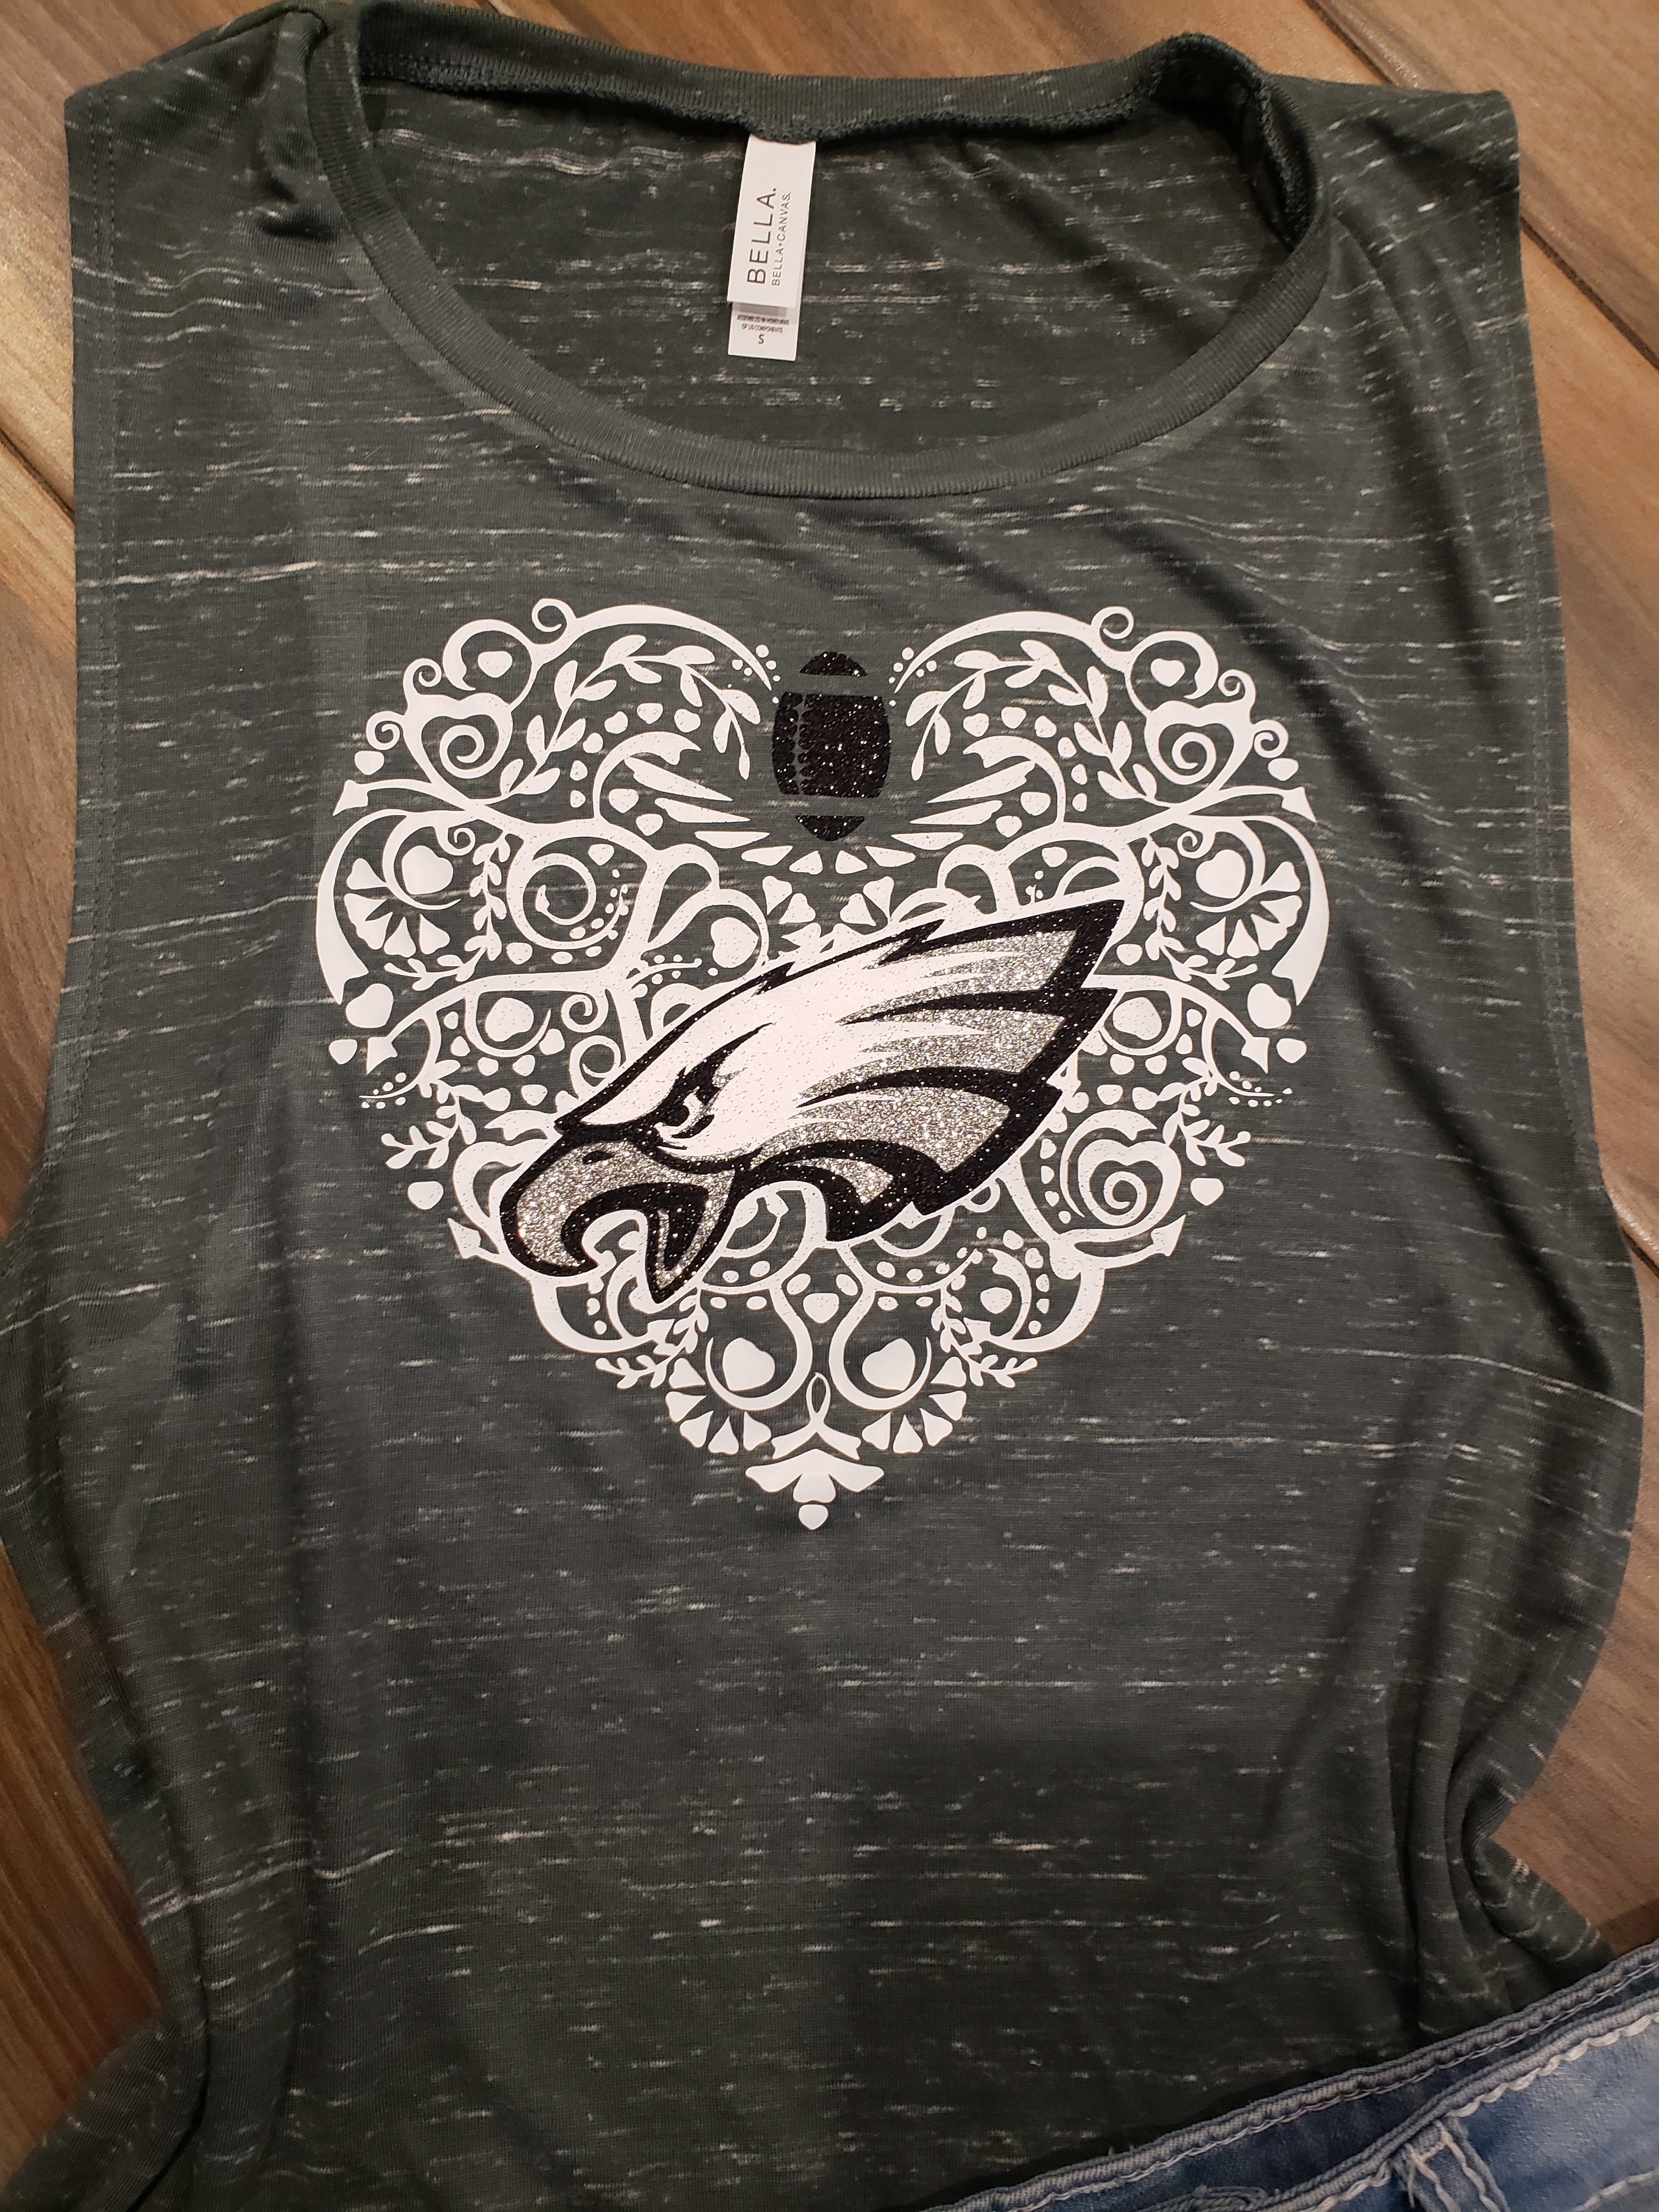 Lulu Grace Designs Philadelphia Eagles Glitter Heart Shirt: NFL Football Fan Gear & Apparel S / Ladies Muscle Tank